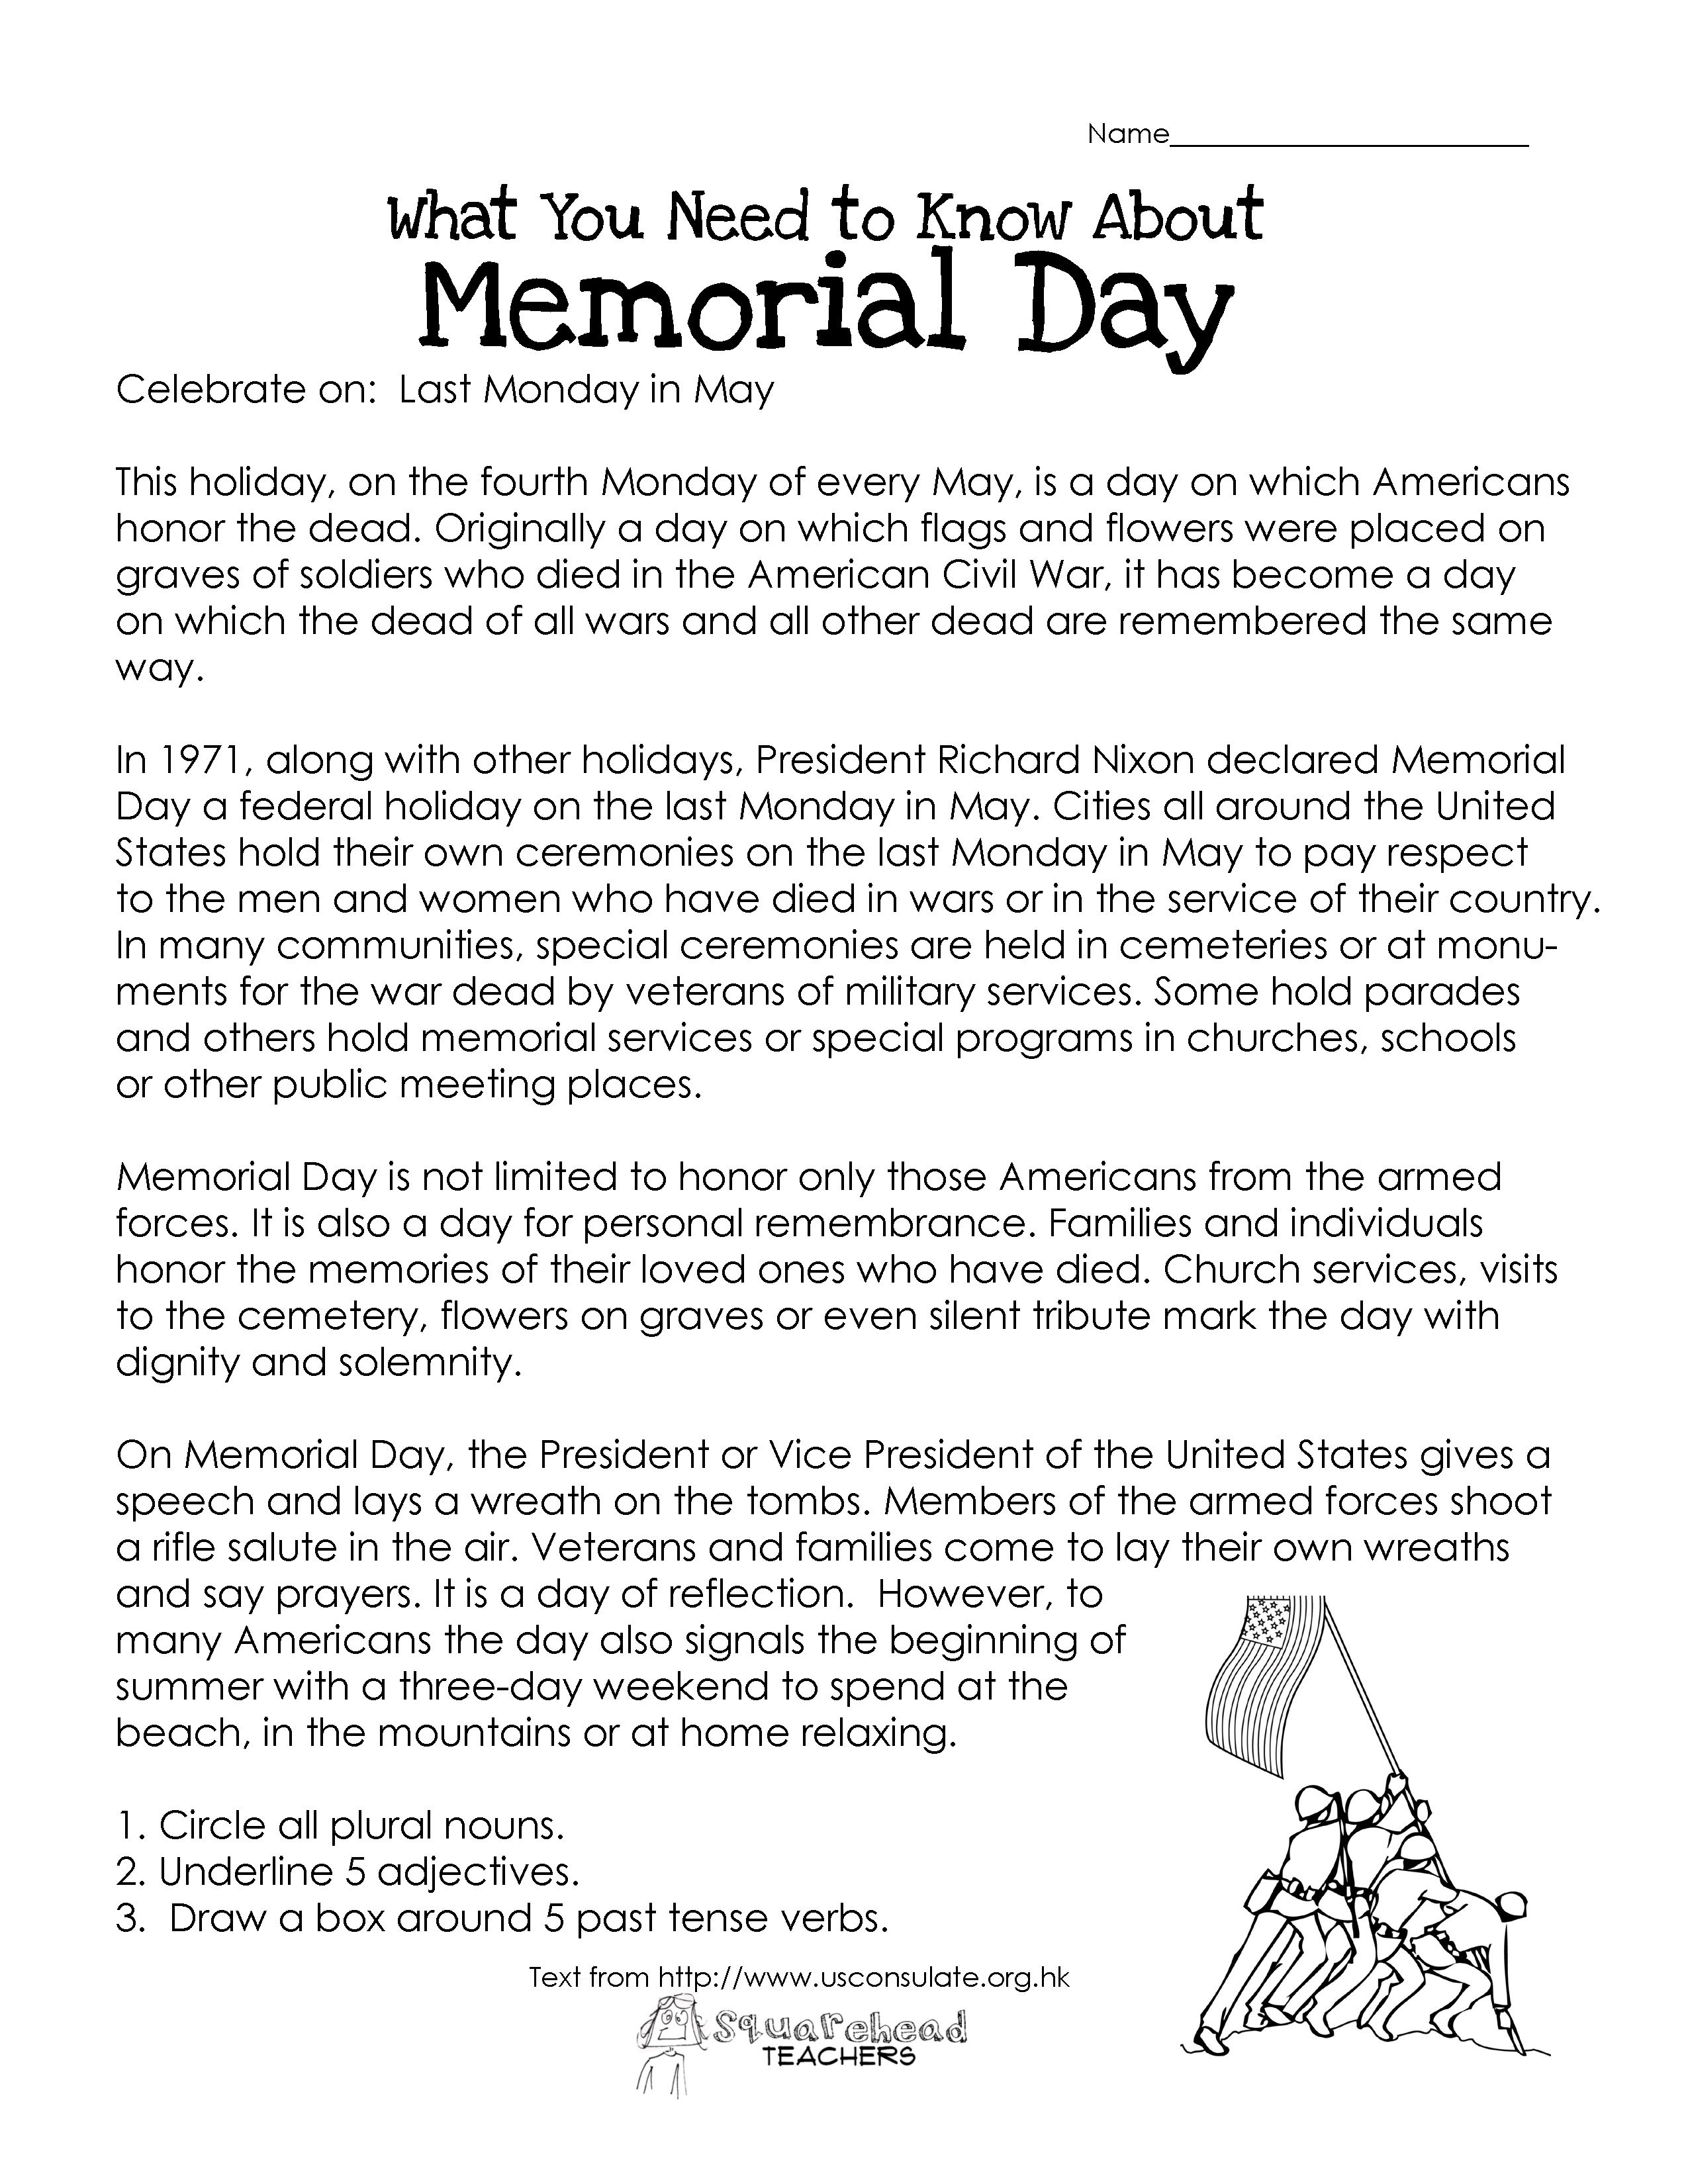 Memorial Day (Free Worksheet) | Squarehead Teachers. Repinnedsos | Memorial Day Free Printable Worksheets